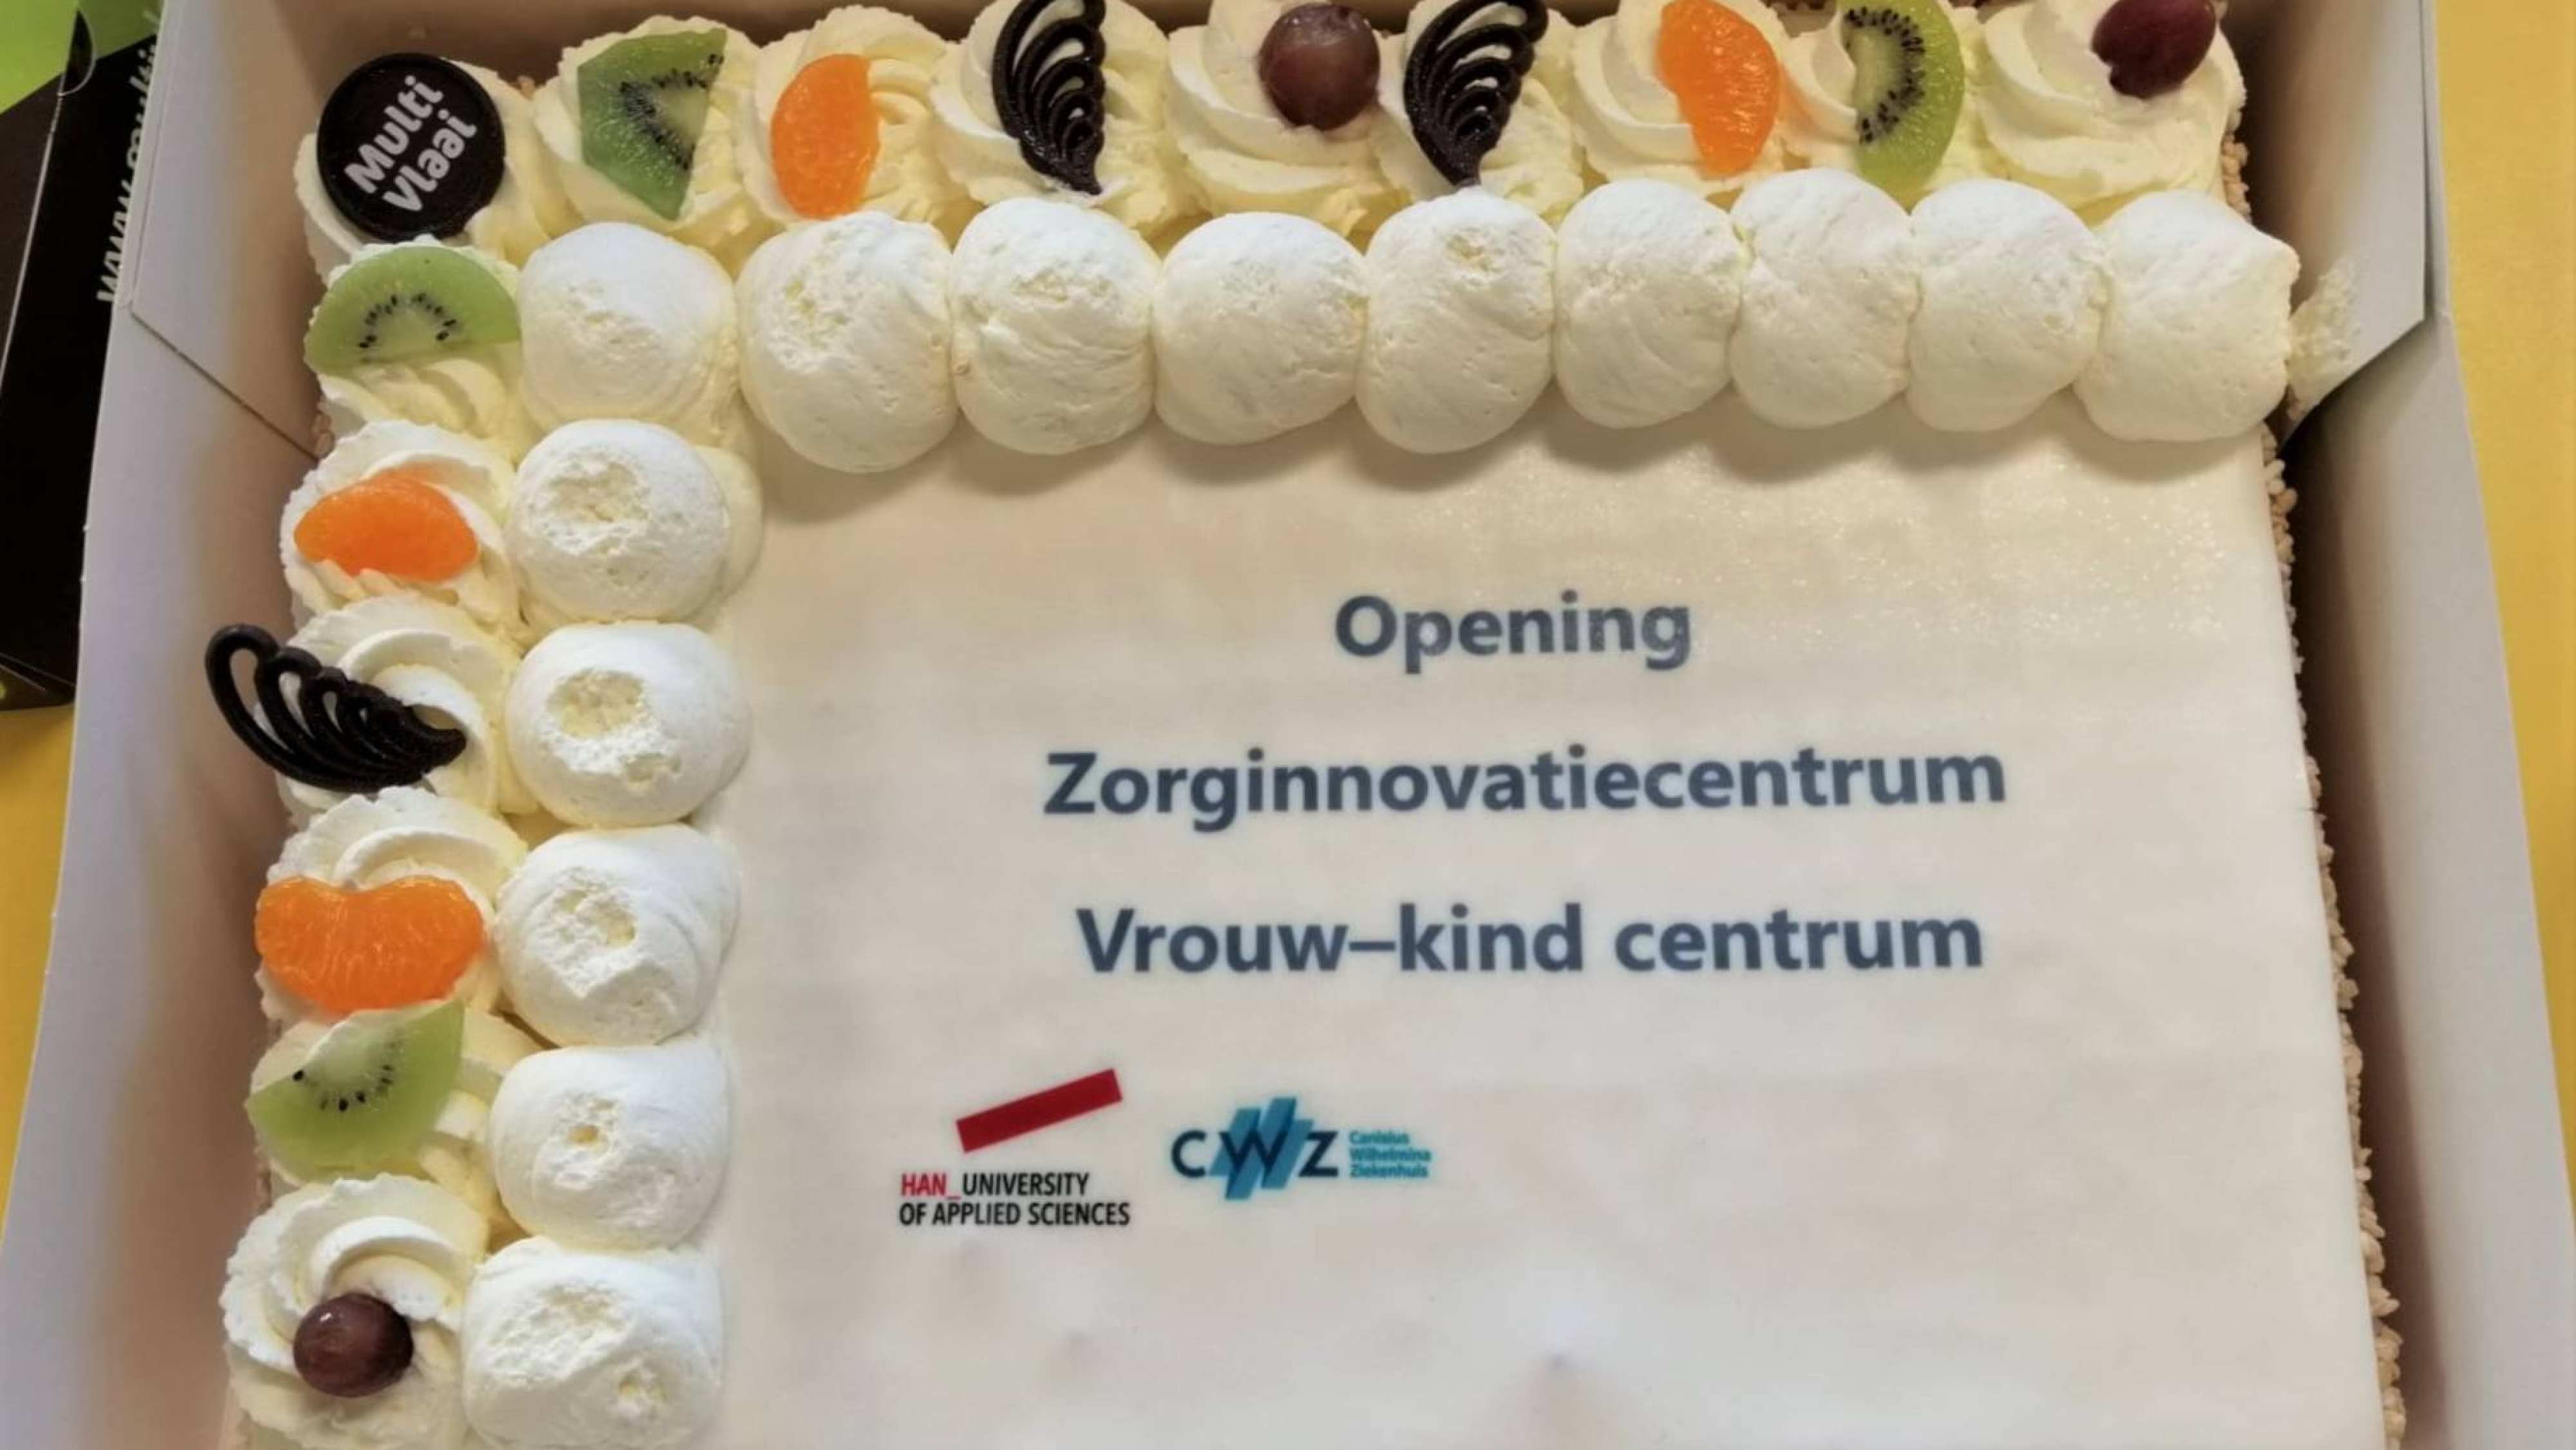 466851 Het Canisius Wilhelmina Ziekenhuis en de Hogeschool van Arnhem openen het eerste zorg innovatie centrum. Een feestelijk moment waar taart niet mocht ontbreken.